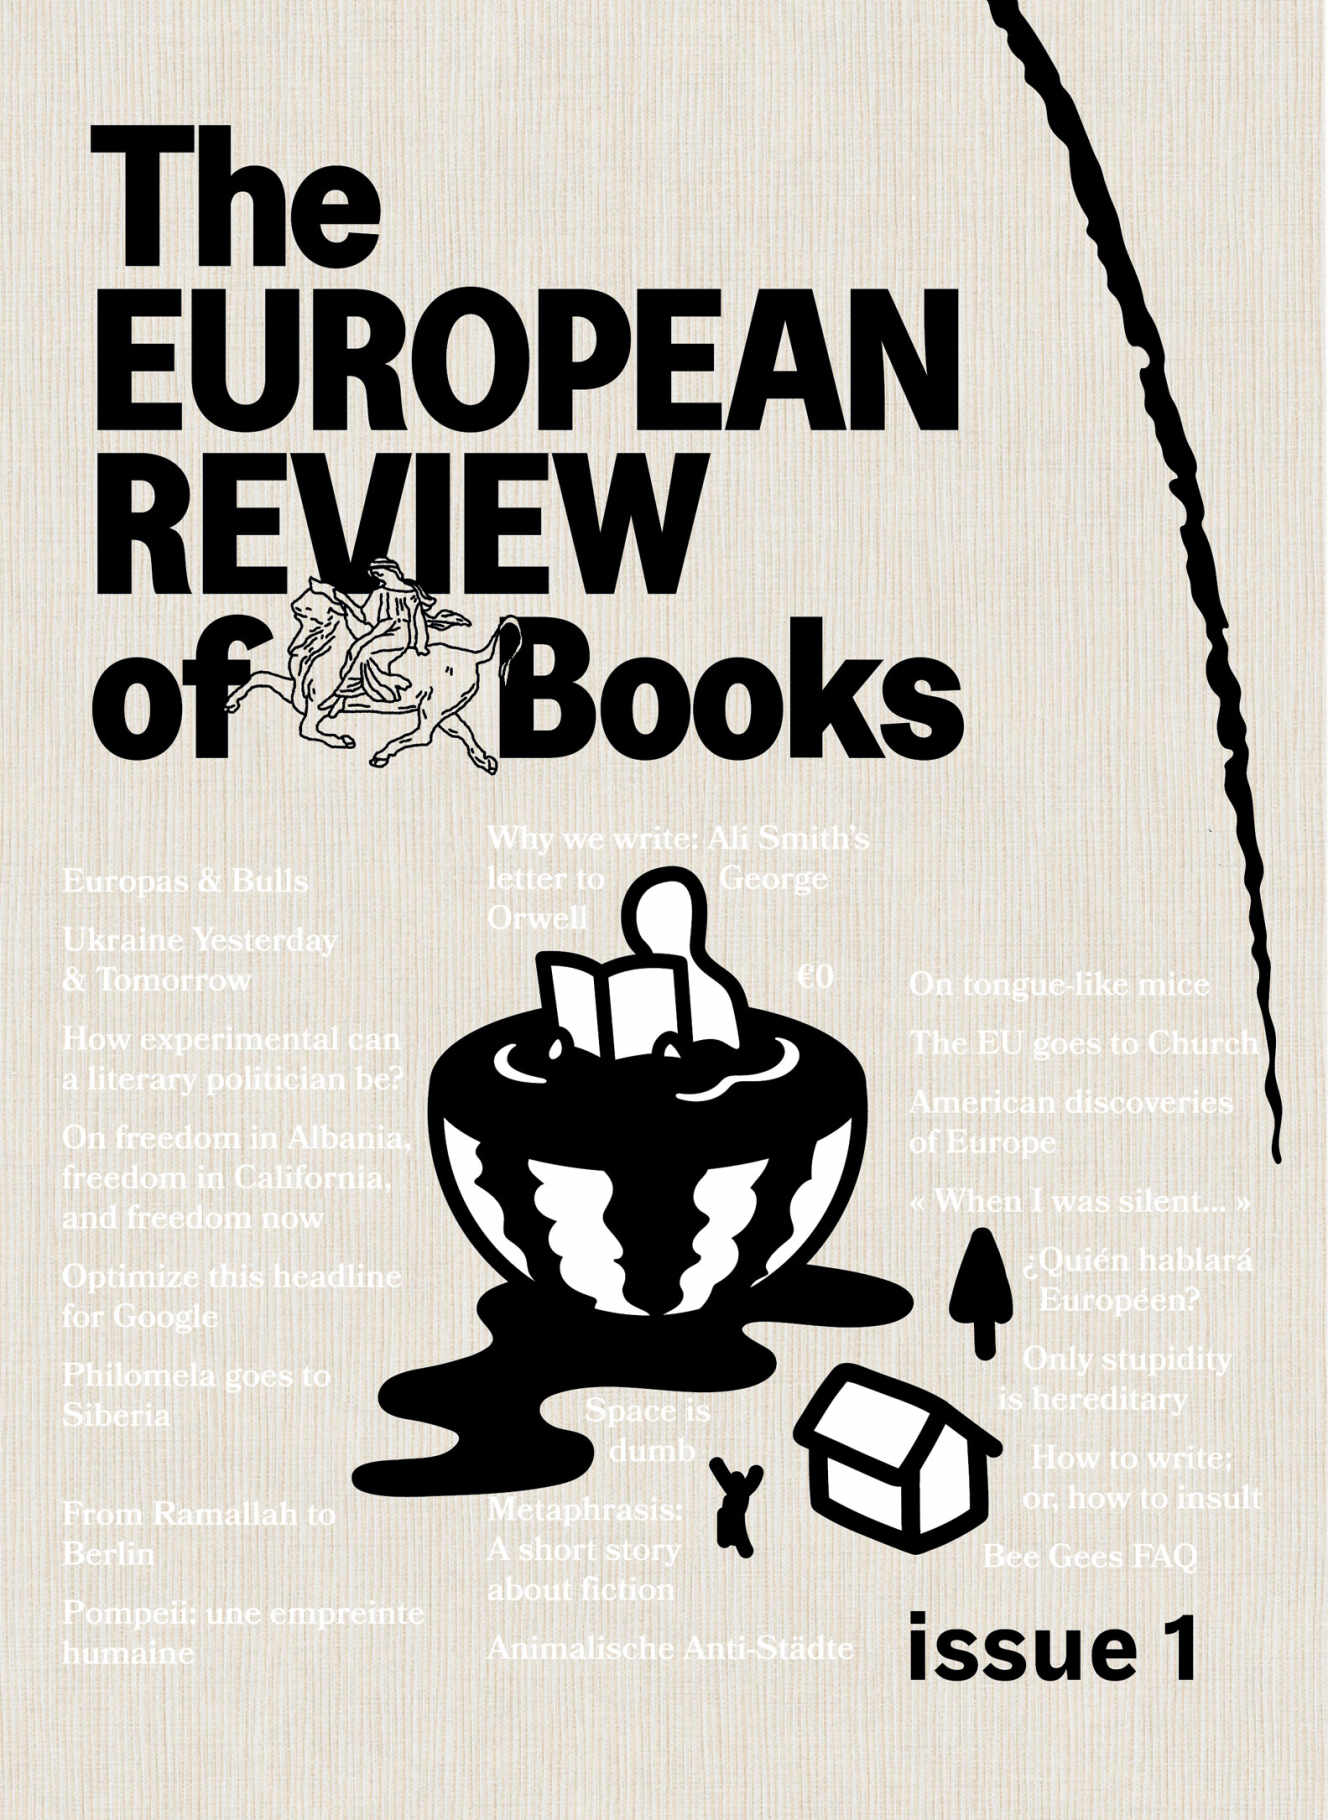 Couverture du premier numéro de la European Review of Books